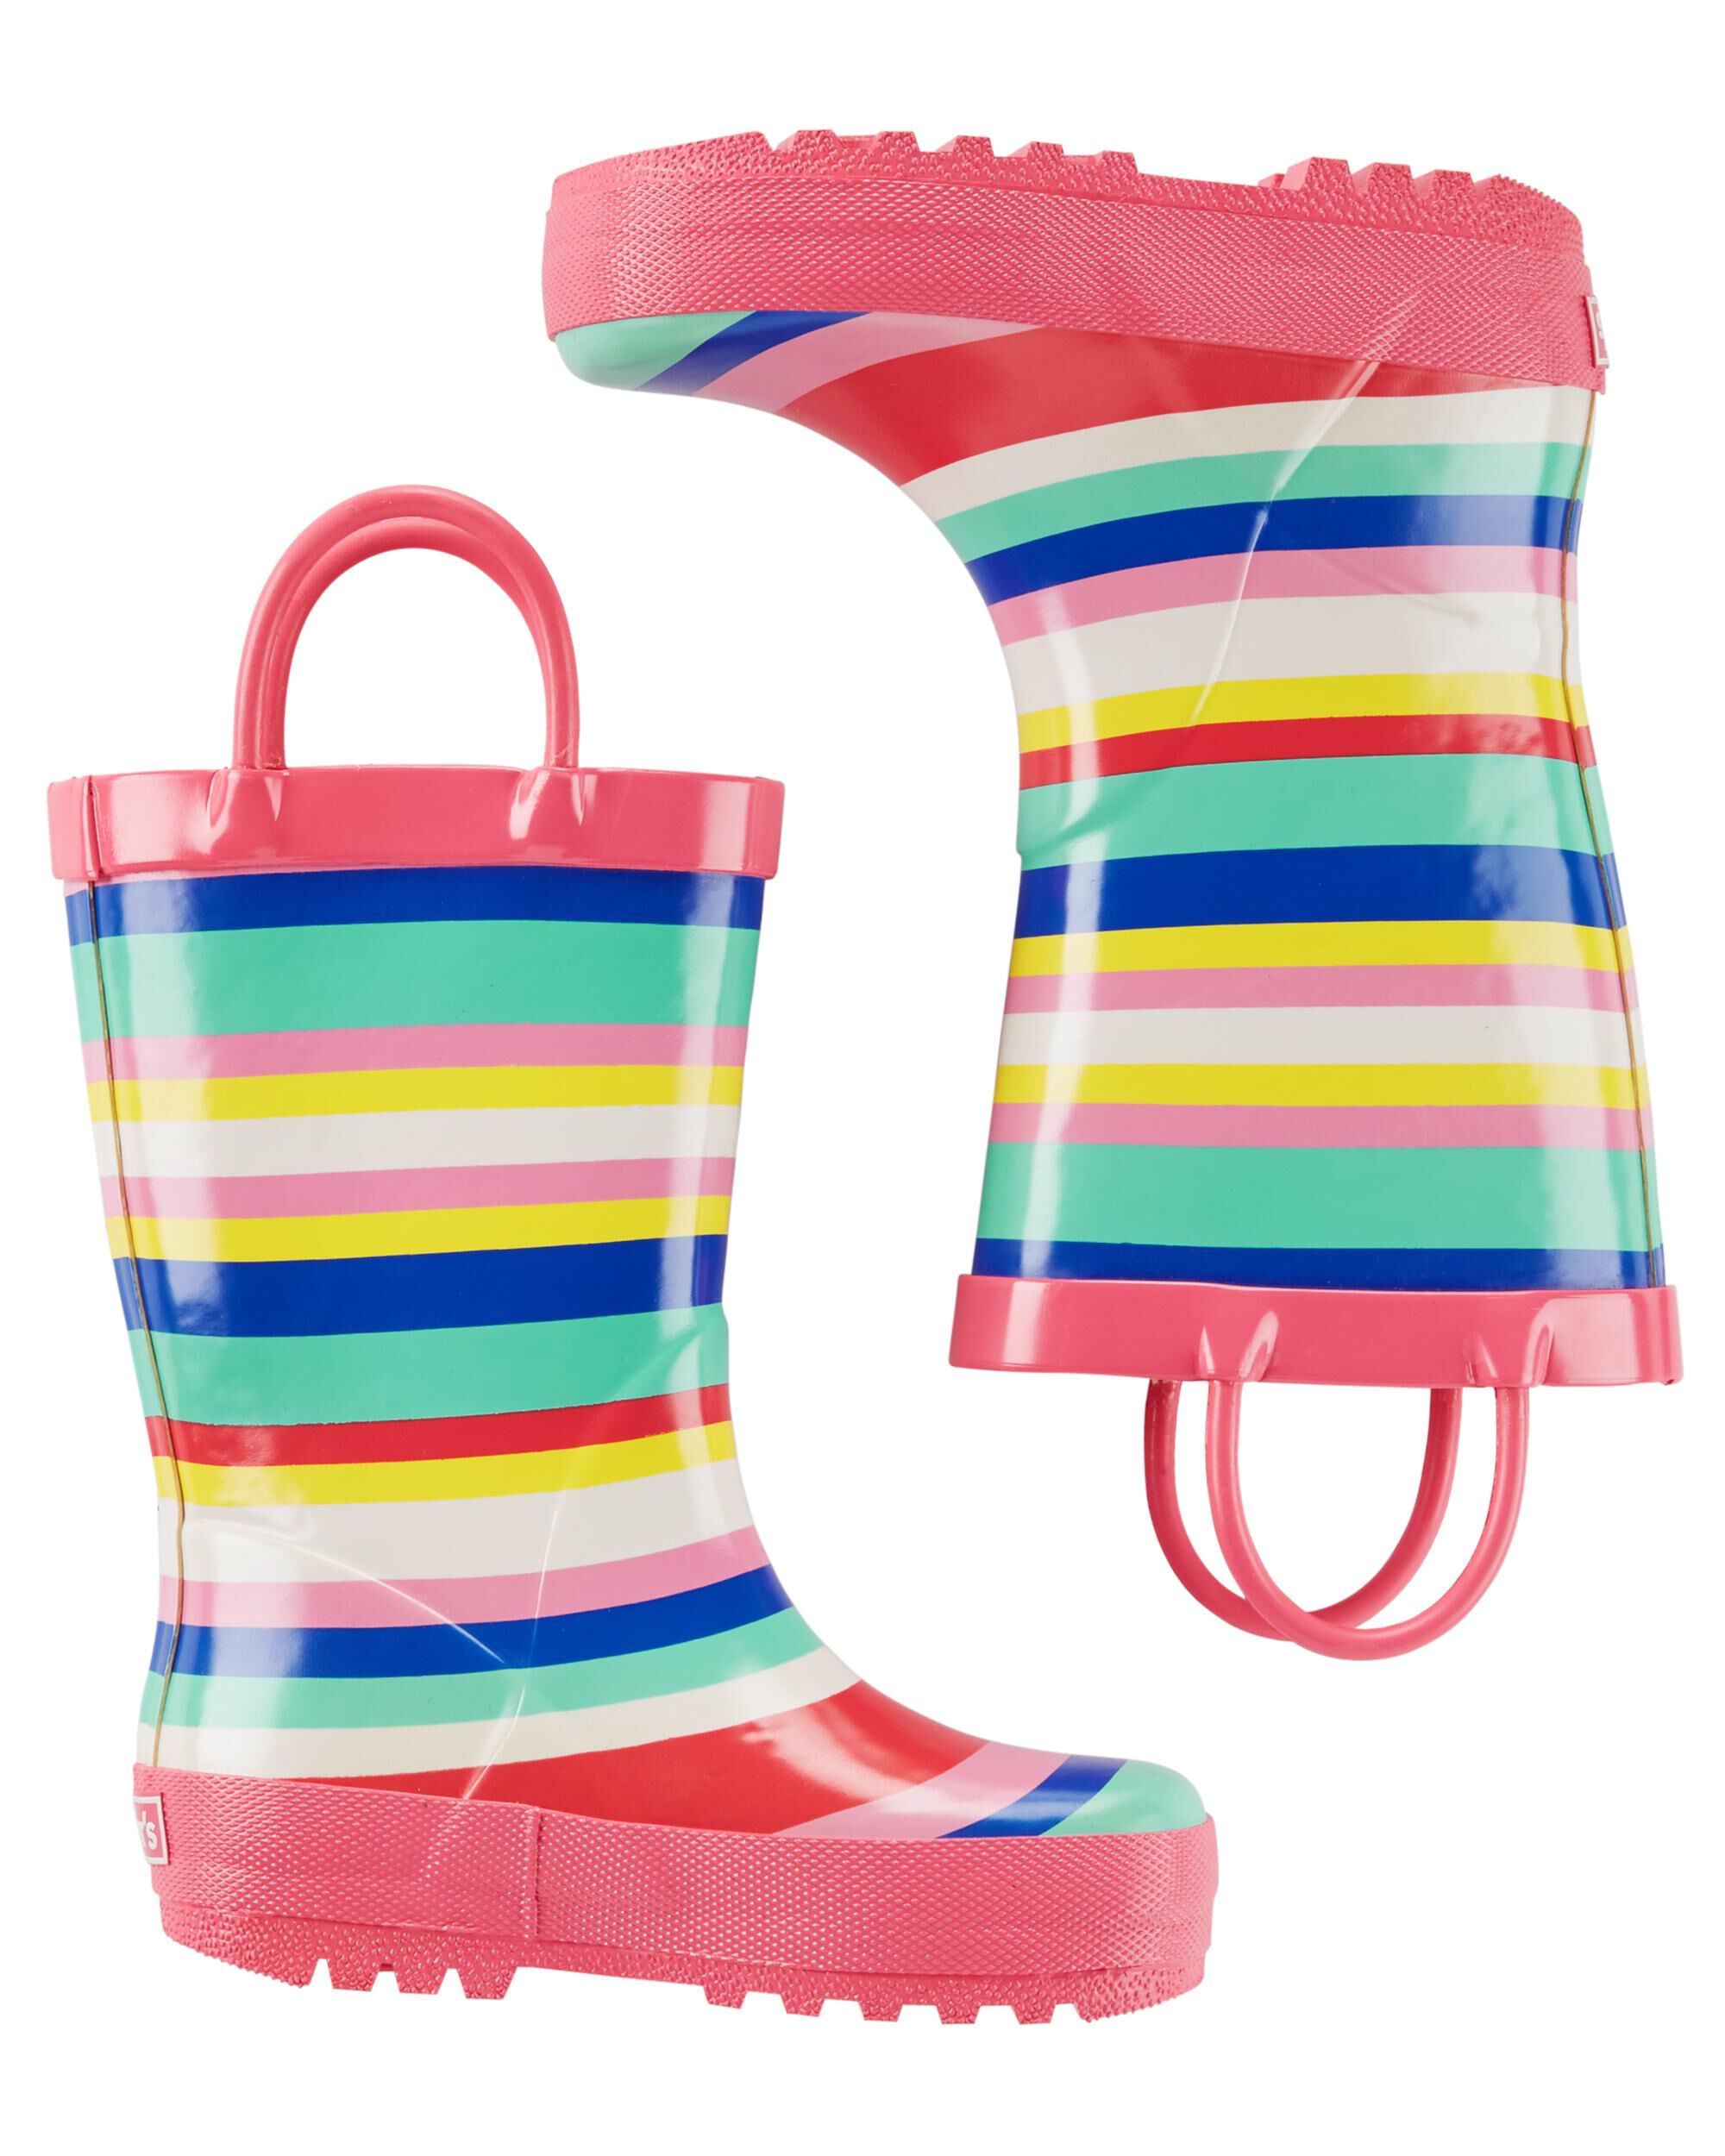 striped rain boots